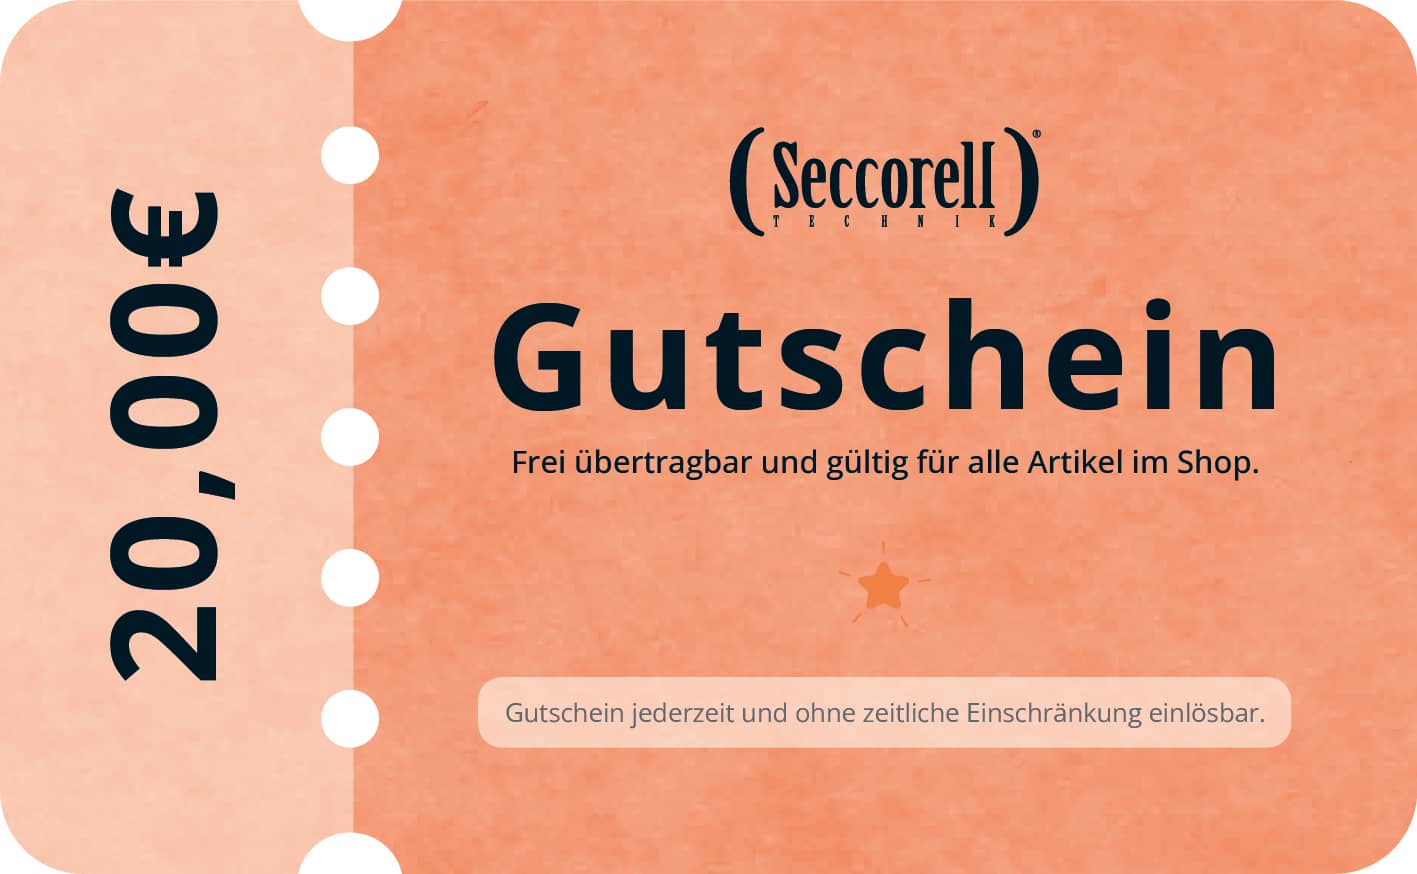 Seccorell-Gutschein digital